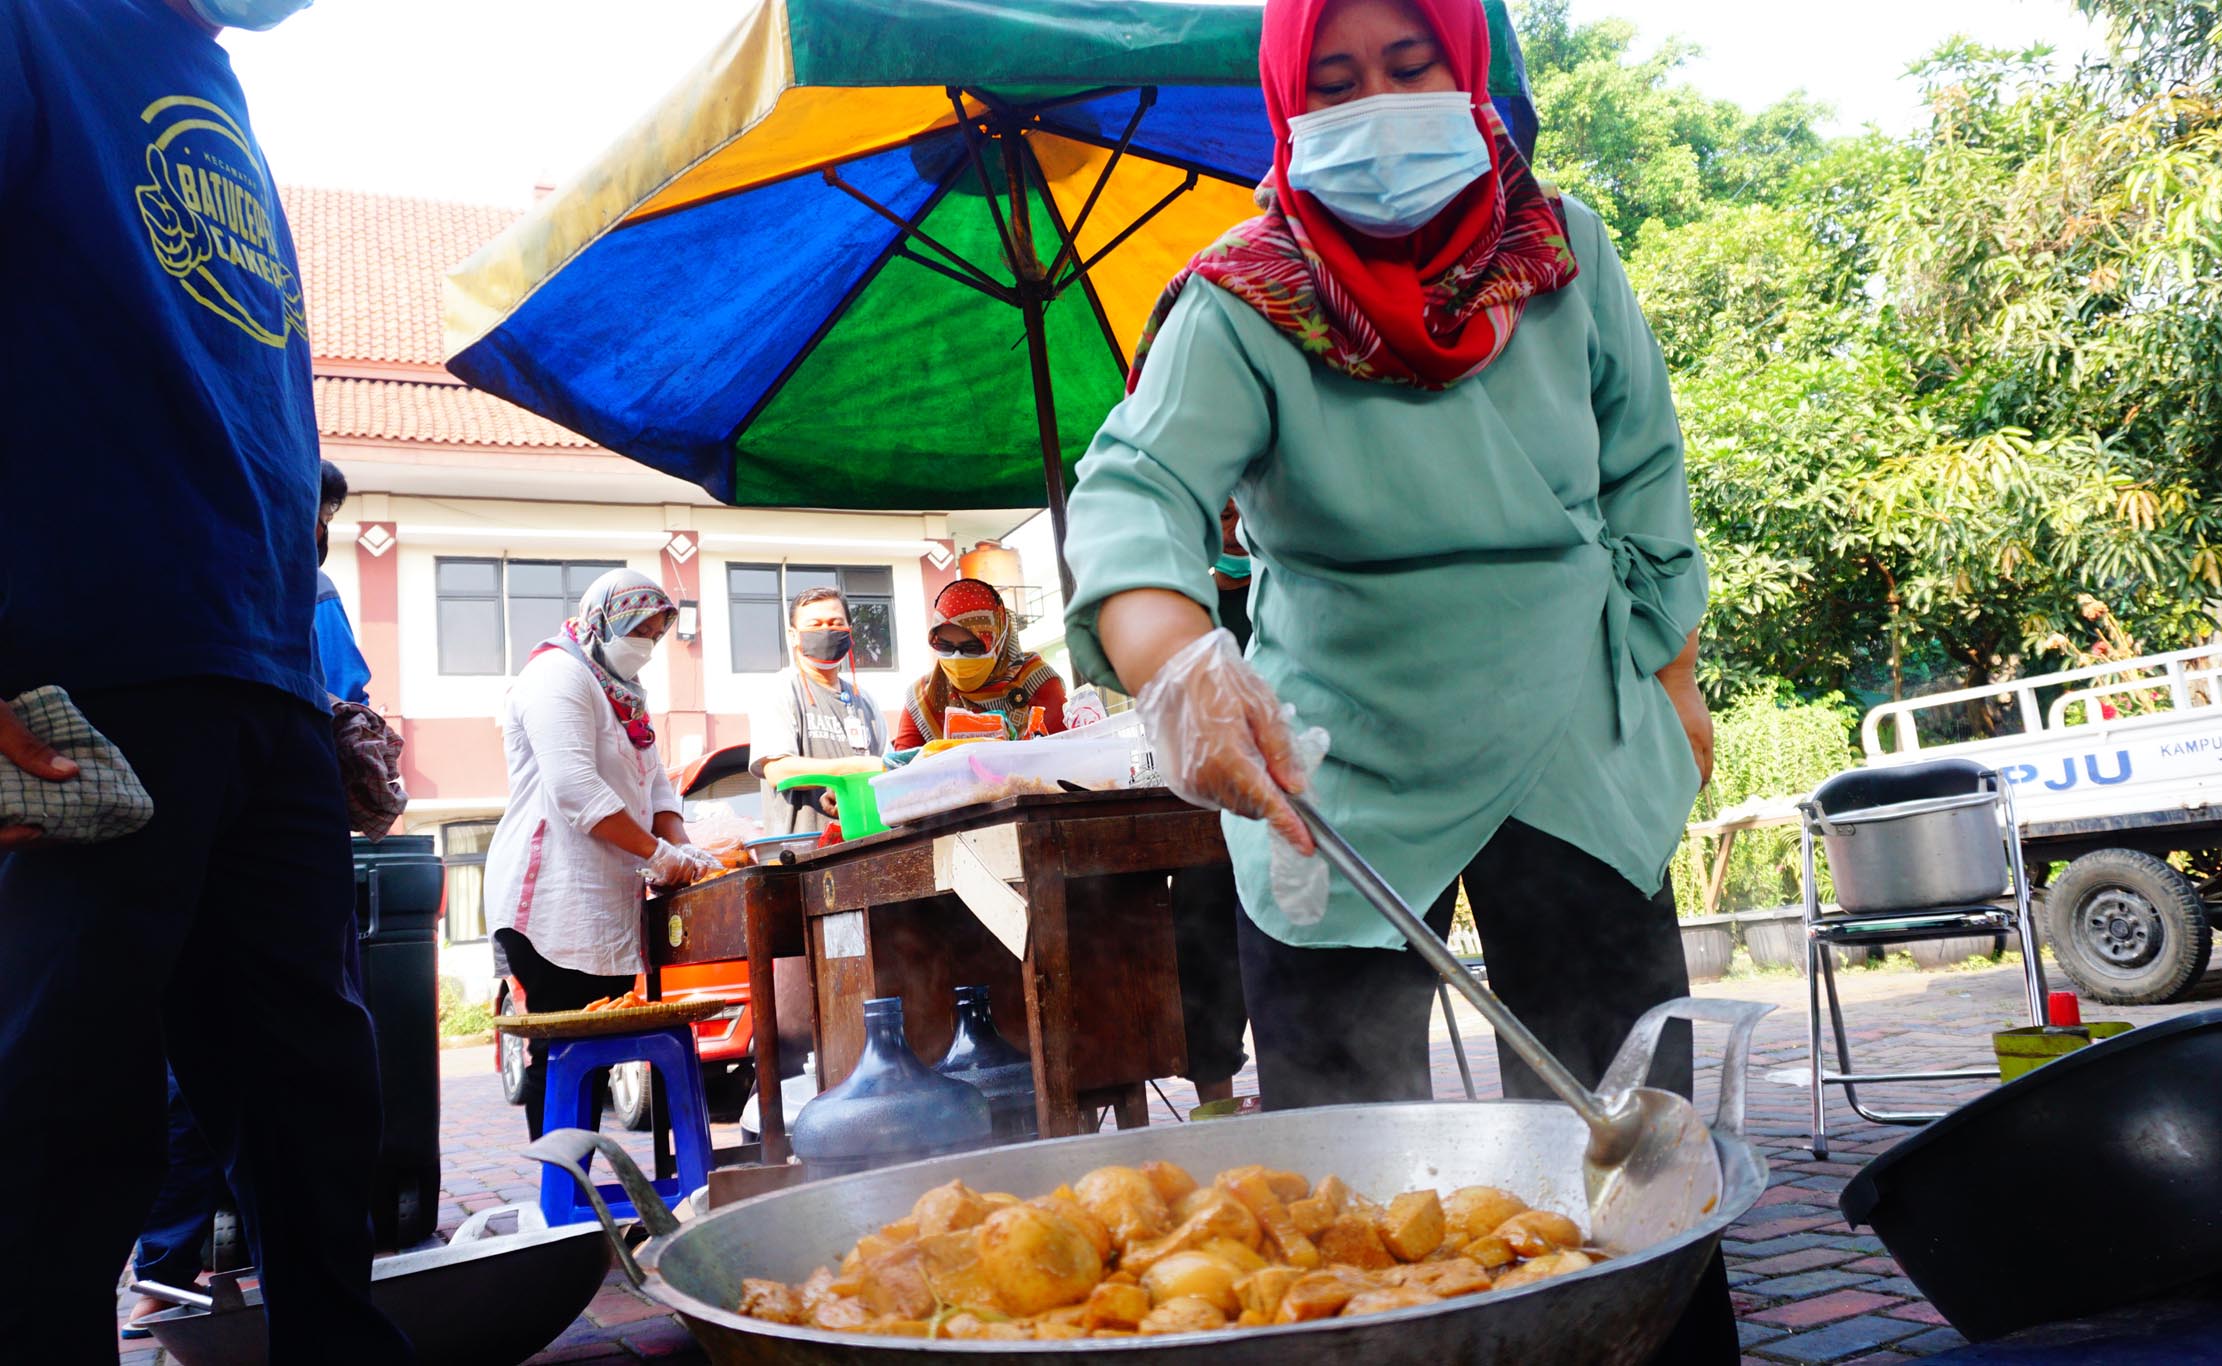 Sejumlah Pegawai Kecamatan Batuceper Kota Tangerang sedang menyiapkan dan memasak di Dapur umum  kecamatan dengan menerapkan Protokol Kesehatan yang ketat, kegiatan tersebut guna meringankan masyarakat yang sedang menjalankan isolasi mandiri, Minggu 18 Juli 2021. Foto : Panji Asmoro/TrenAsia                               